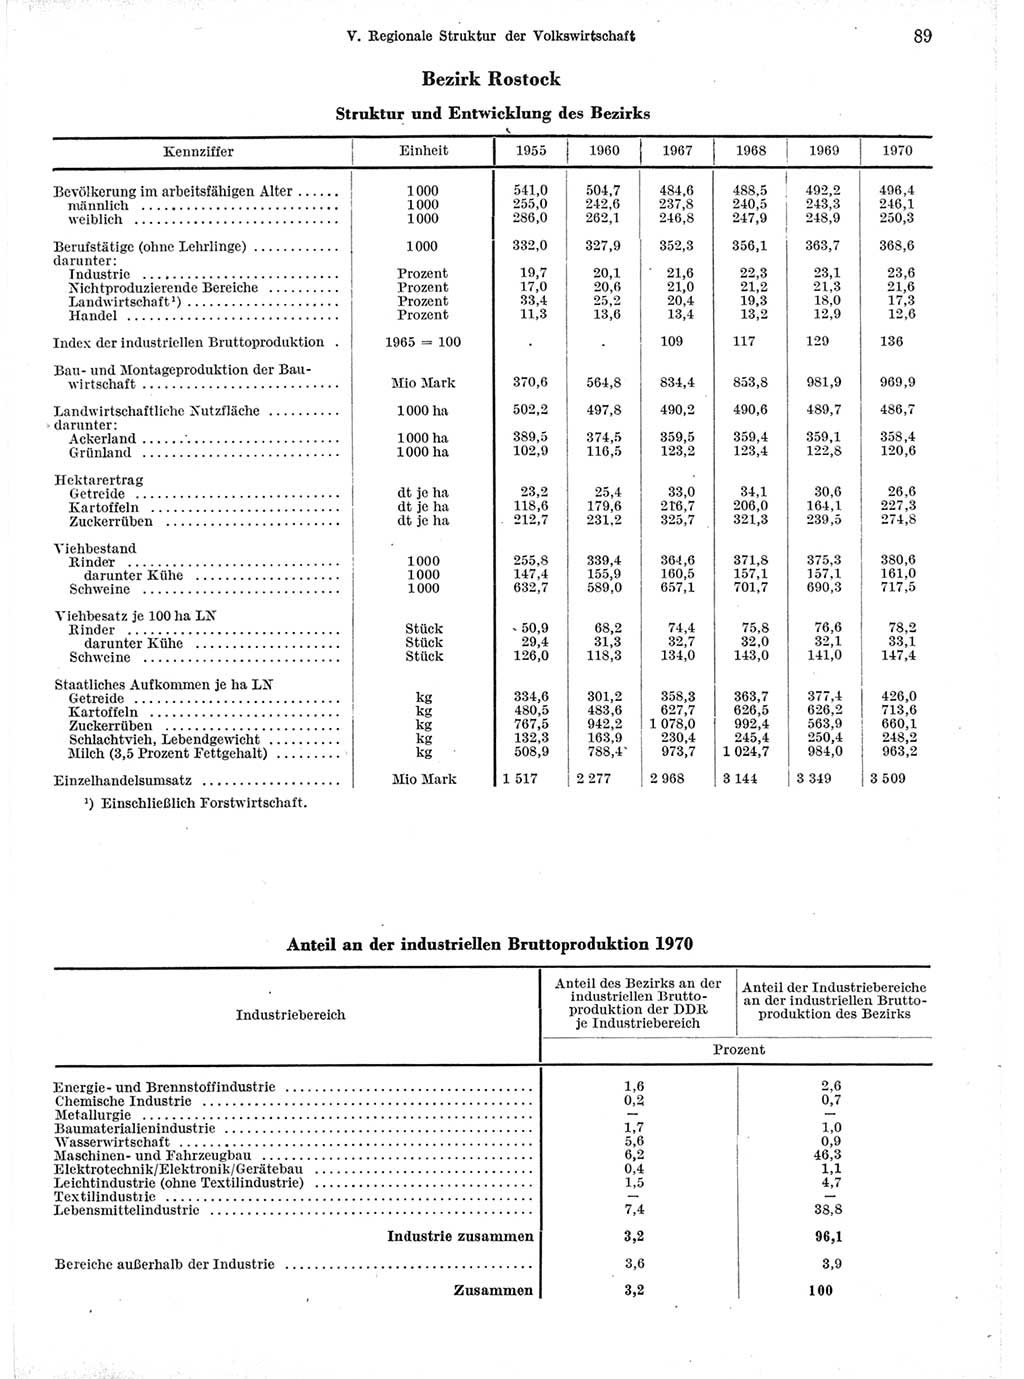 Statistisches Jahrbuch der Deutschen Demokratischen Republik (DDR) 1971, Seite 89 (Stat. Jb. DDR 1971, S. 89)